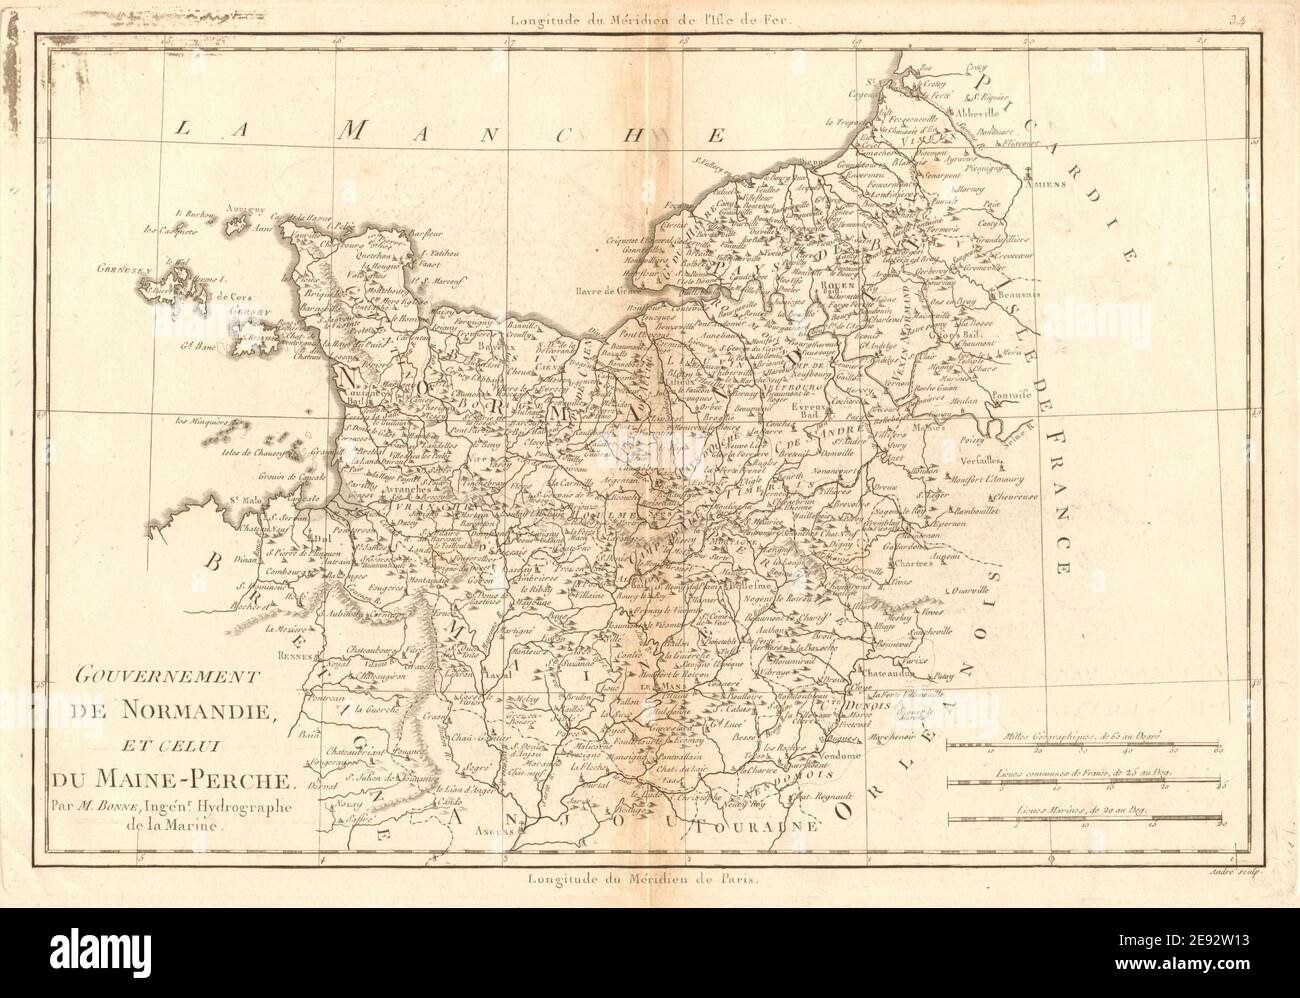 Gouvernement de Normandie et du Maine-Perche. Normandie. BONNE 1787 vieille carte Banque D'Images